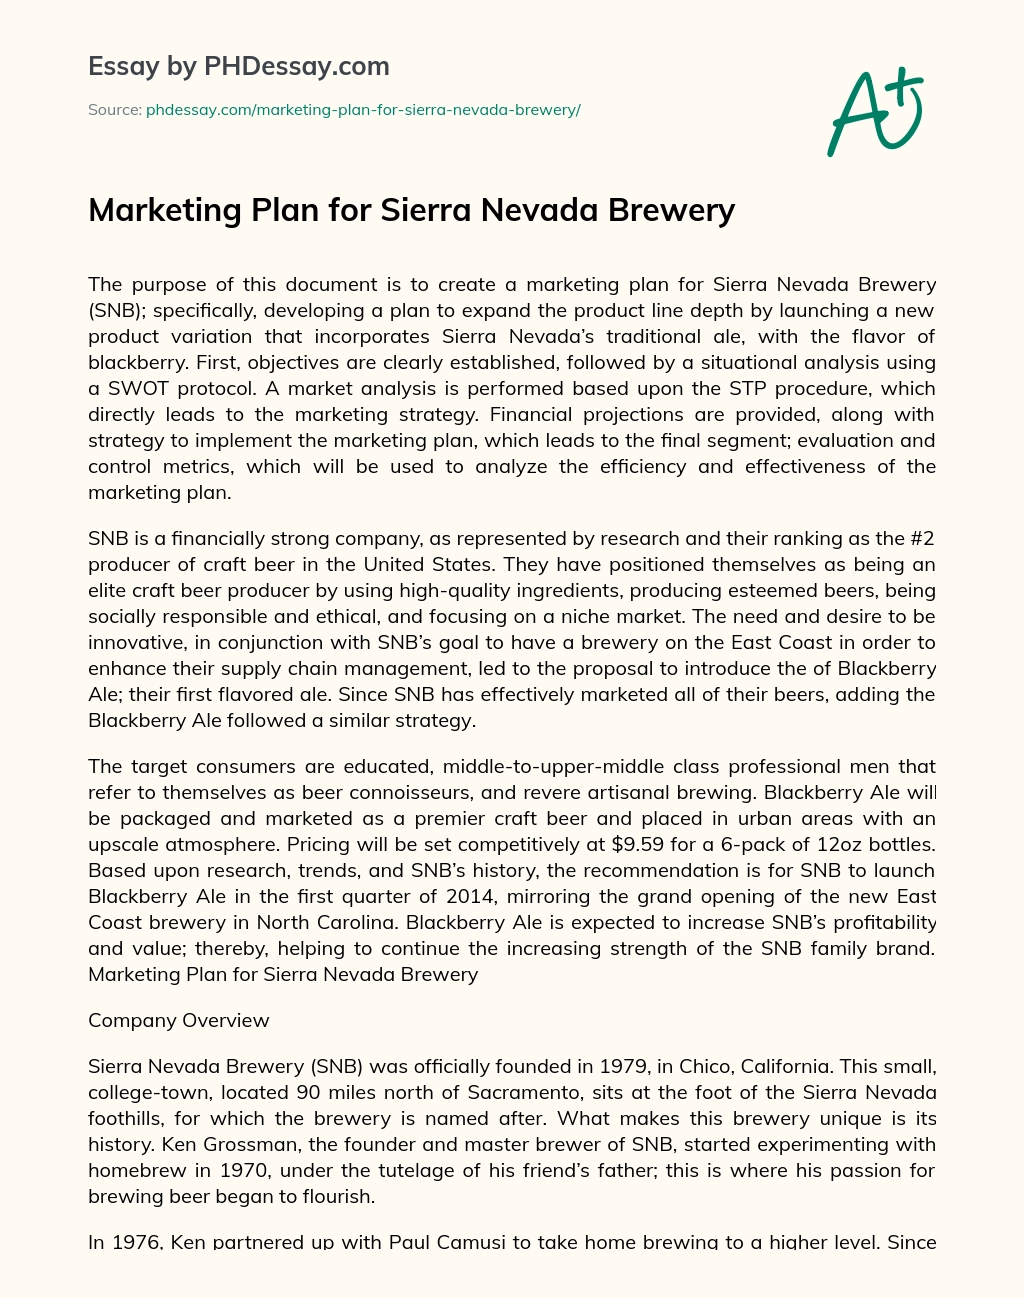 Marketing Plan for Sierra Nevada Brewery essay